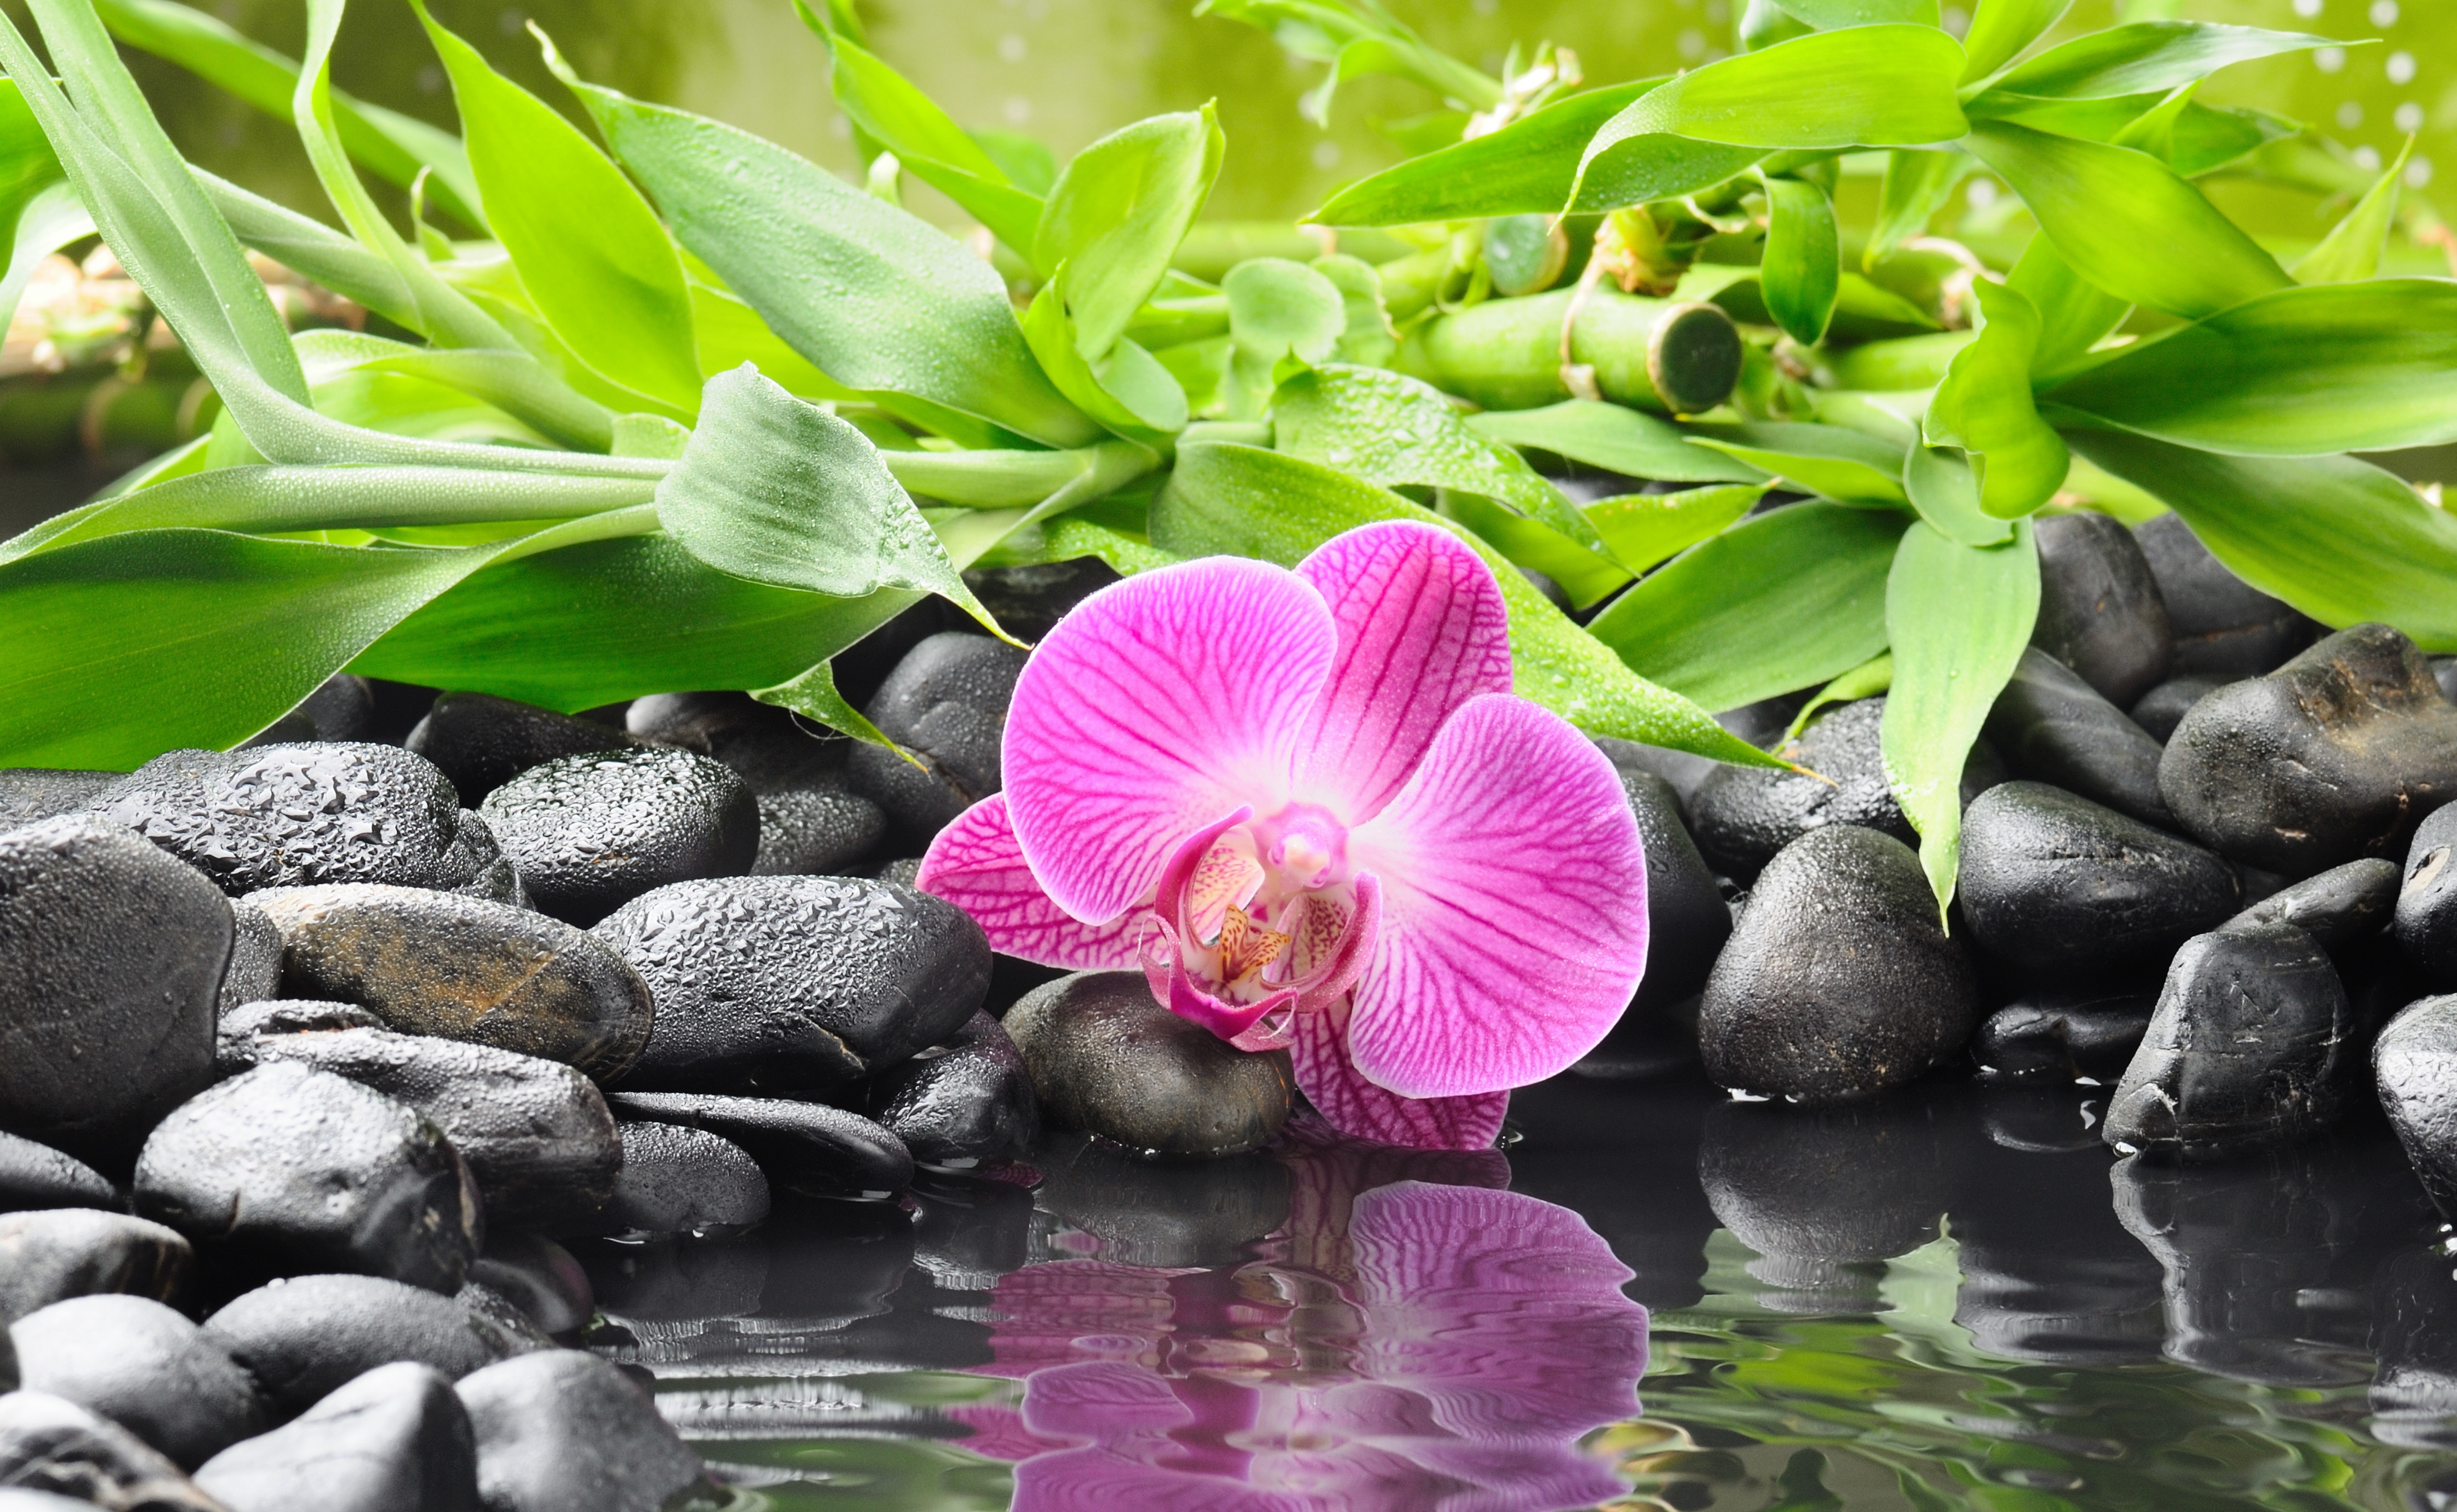 Красивые картинки на заставку экрана телефона. Орхидеи. Фотообои цветы. Цветок орхидеи. Красивые картинки на рабочий стол.